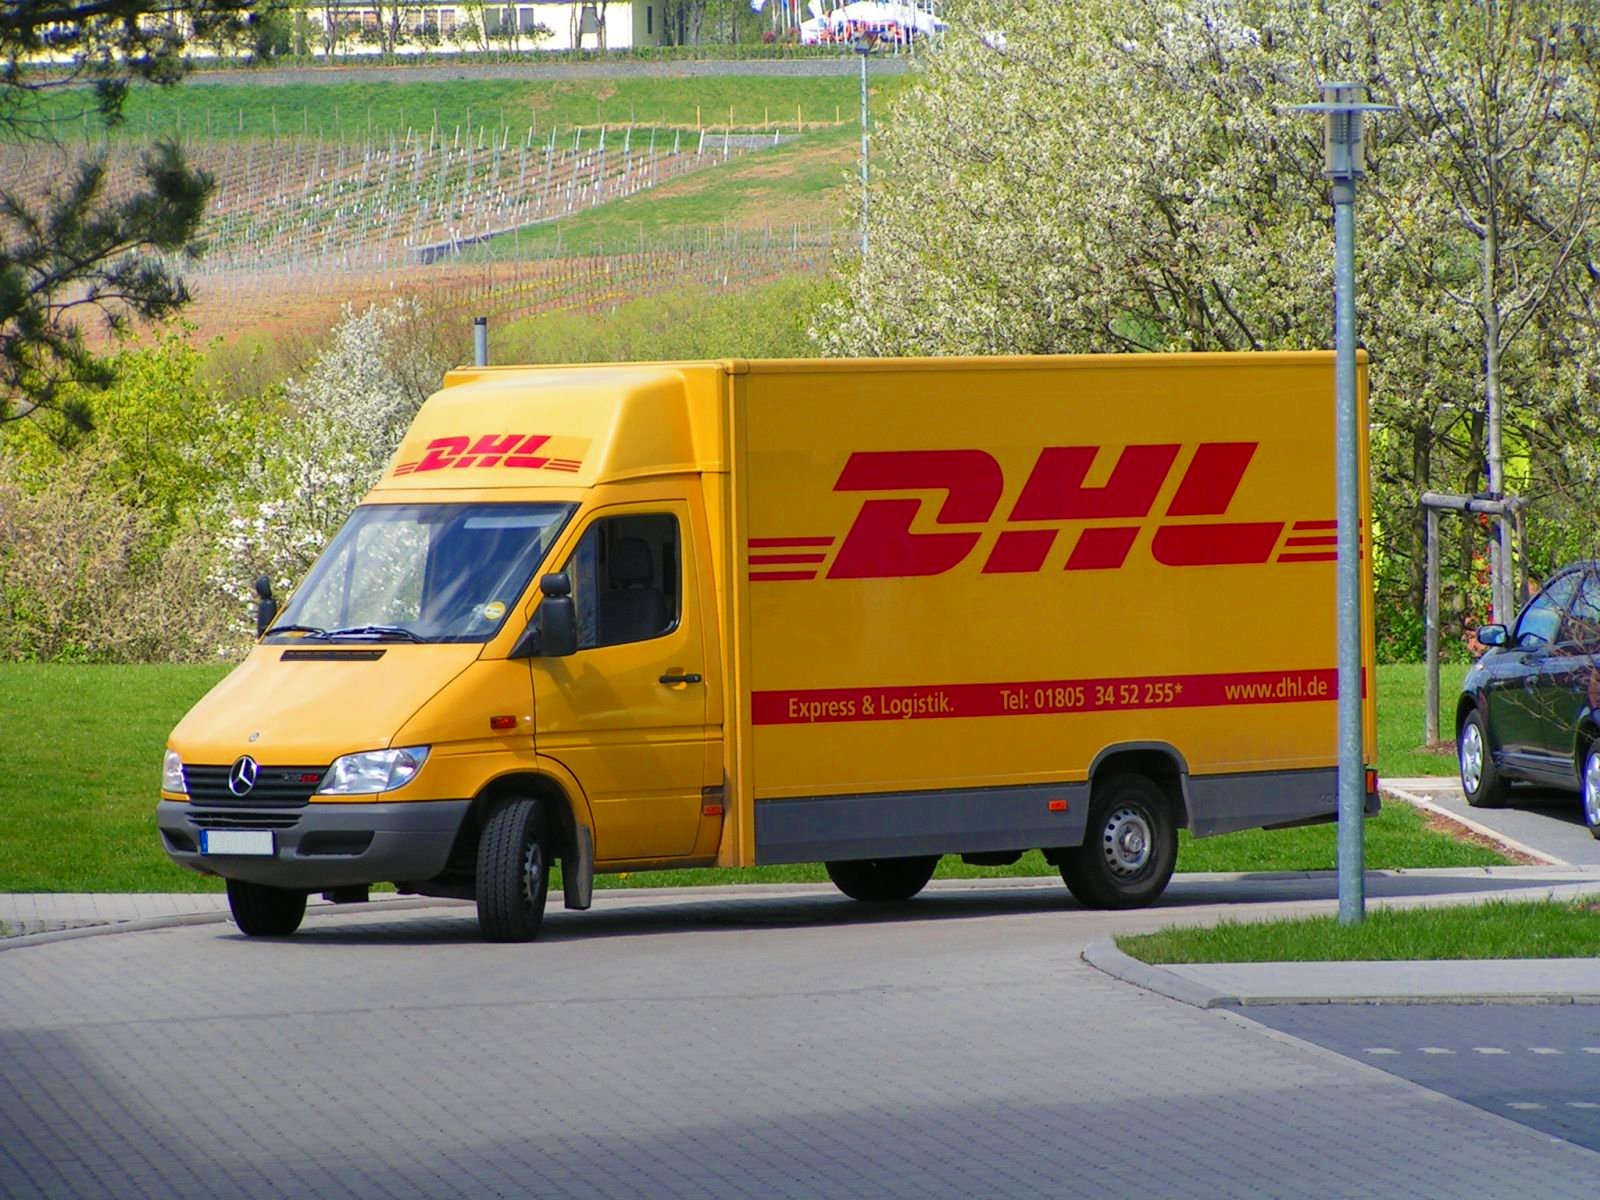 شركة Dhl Express توفر فرص وظيفية بالمحرق